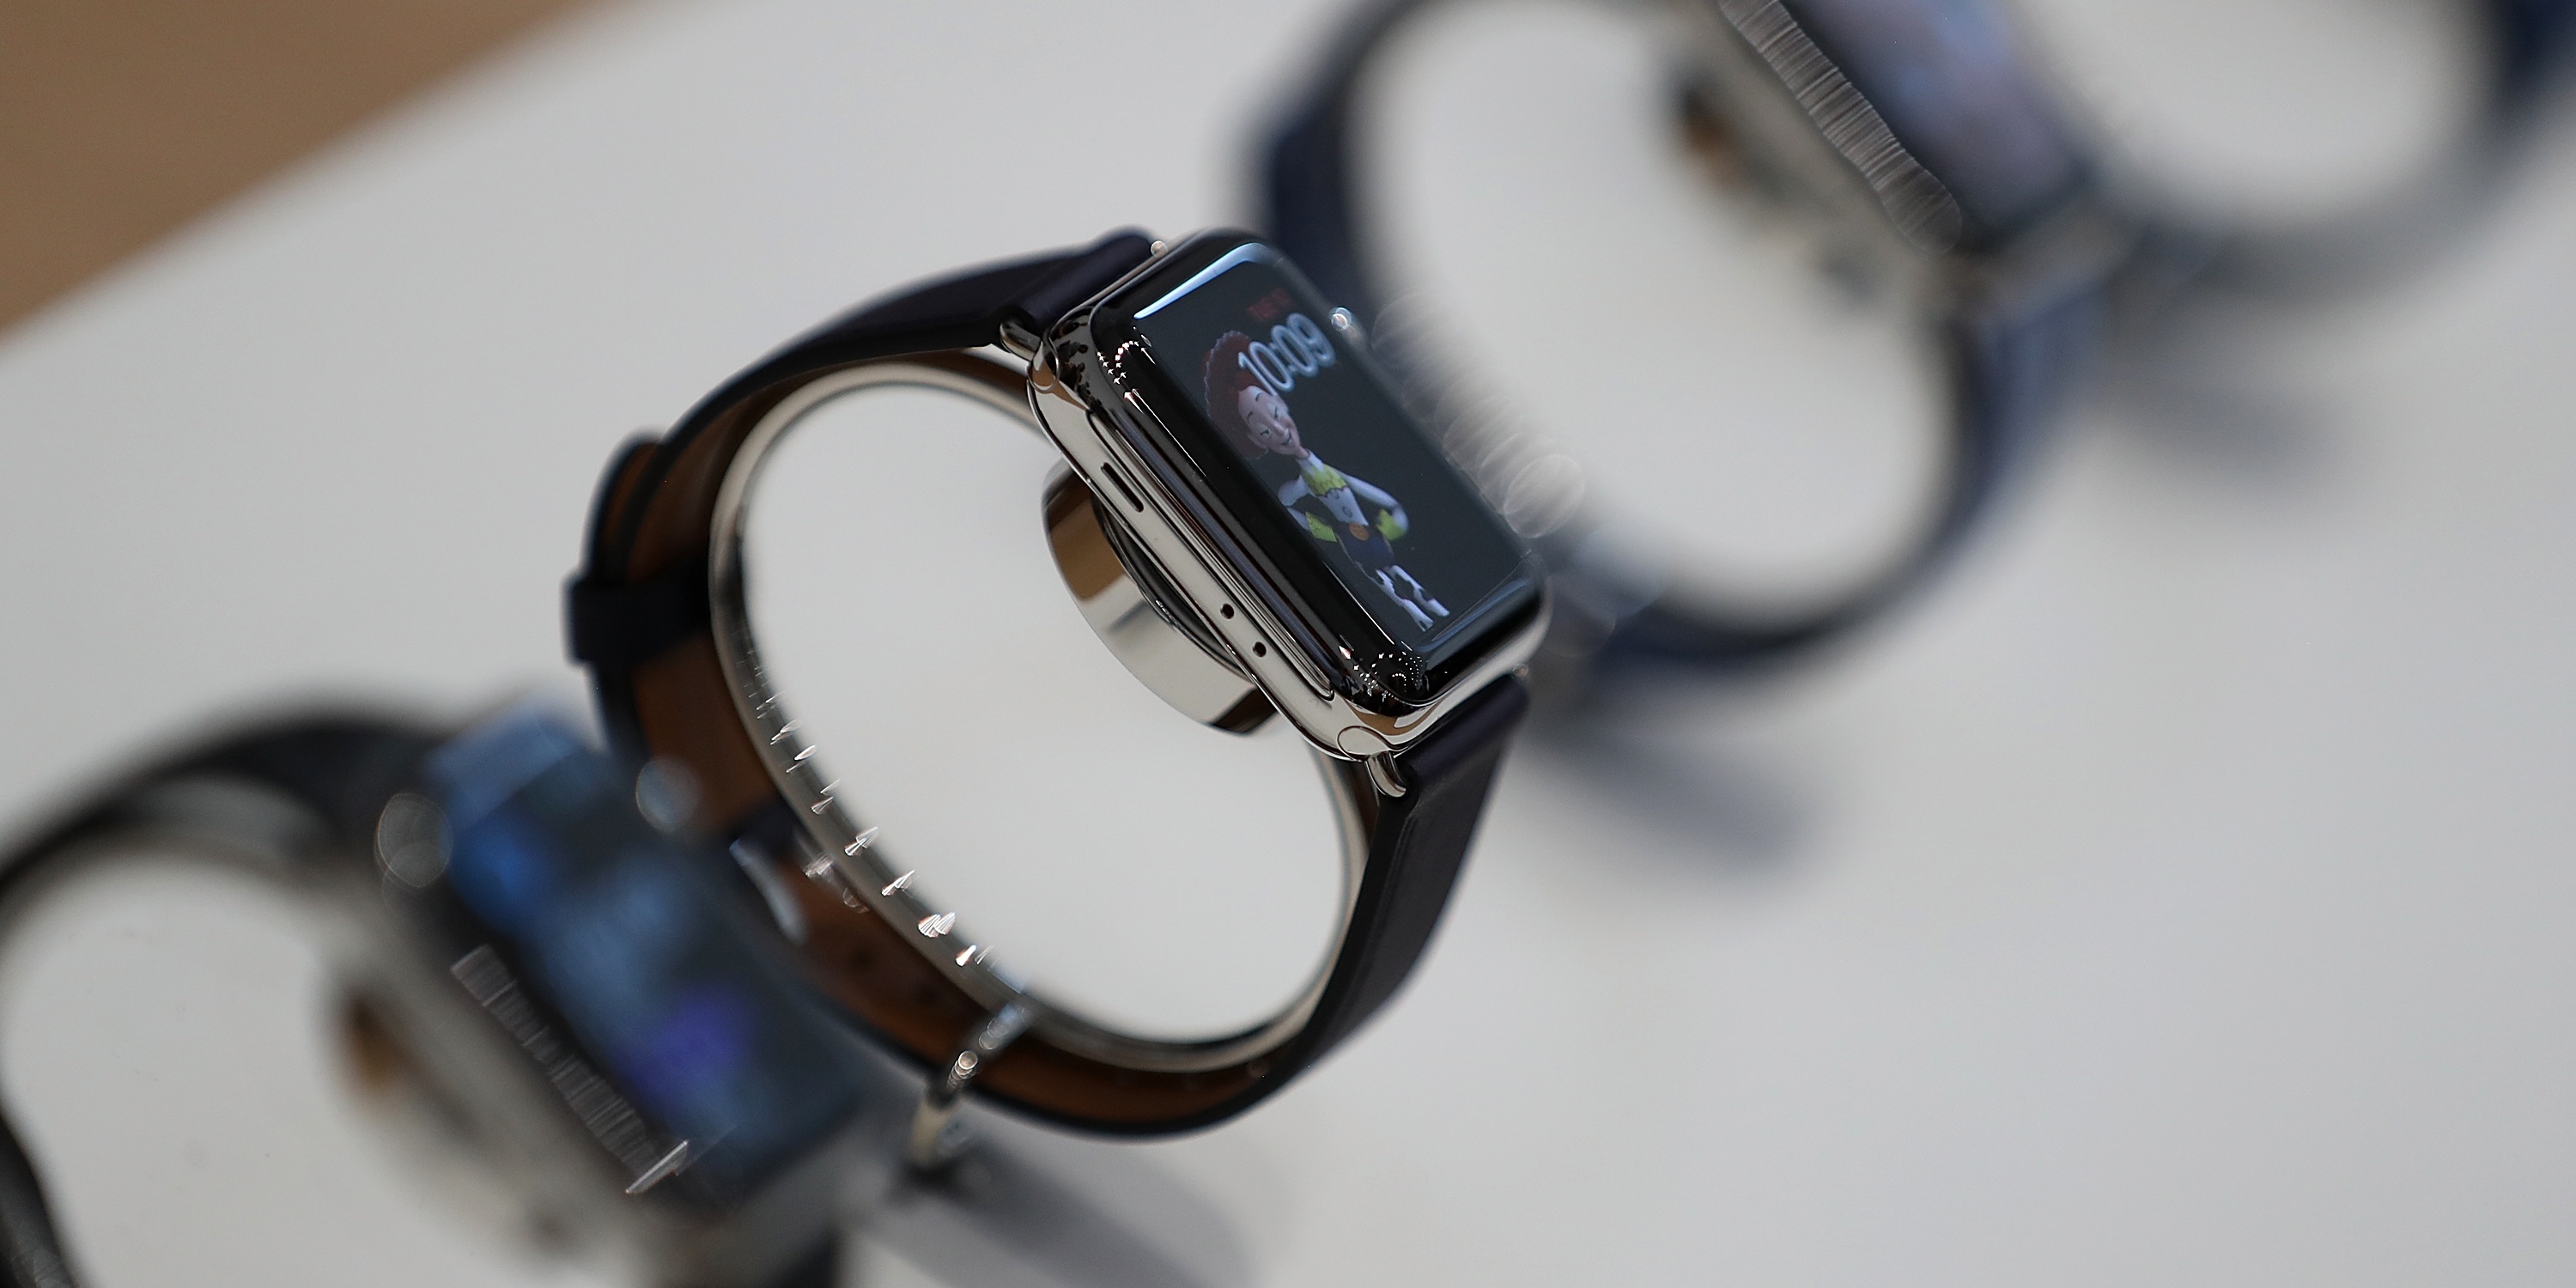 Apple Watch Series 3 : une montre 4G autonome, quatre possibilités